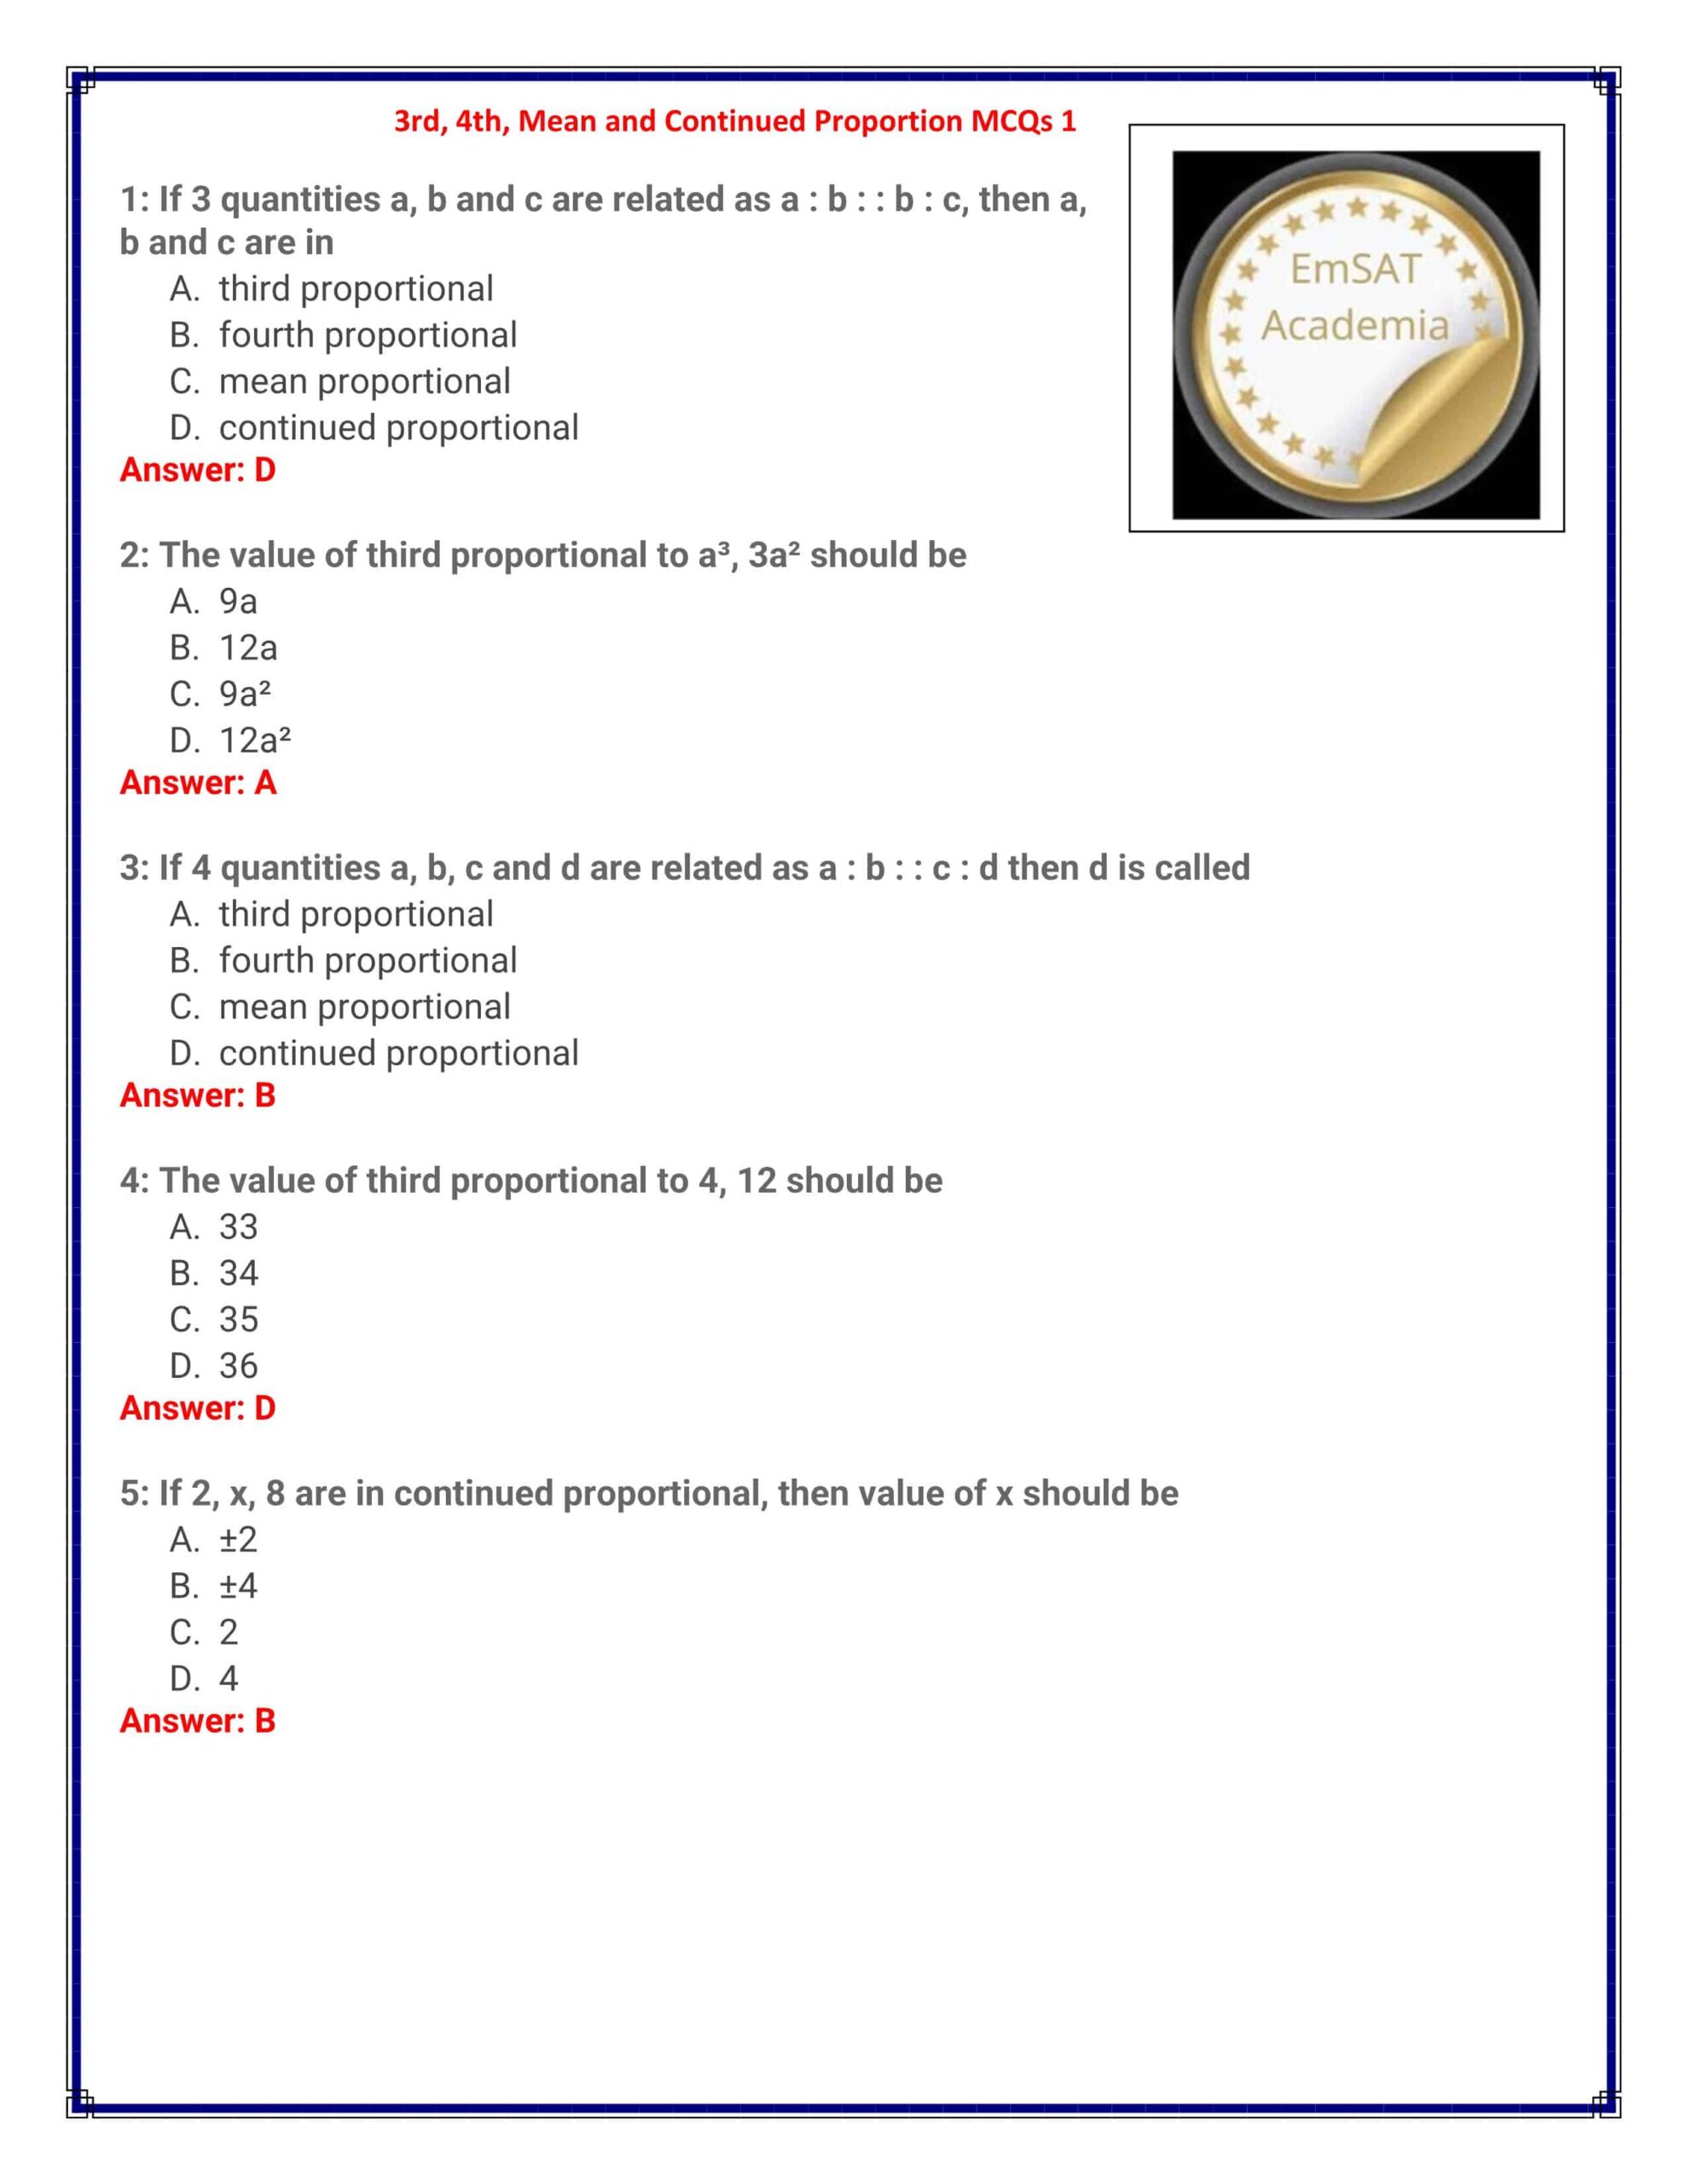 حل أوراق عمل Mean and Continued Proportion الرياضيات المتكاملة الصف الثاني عشر